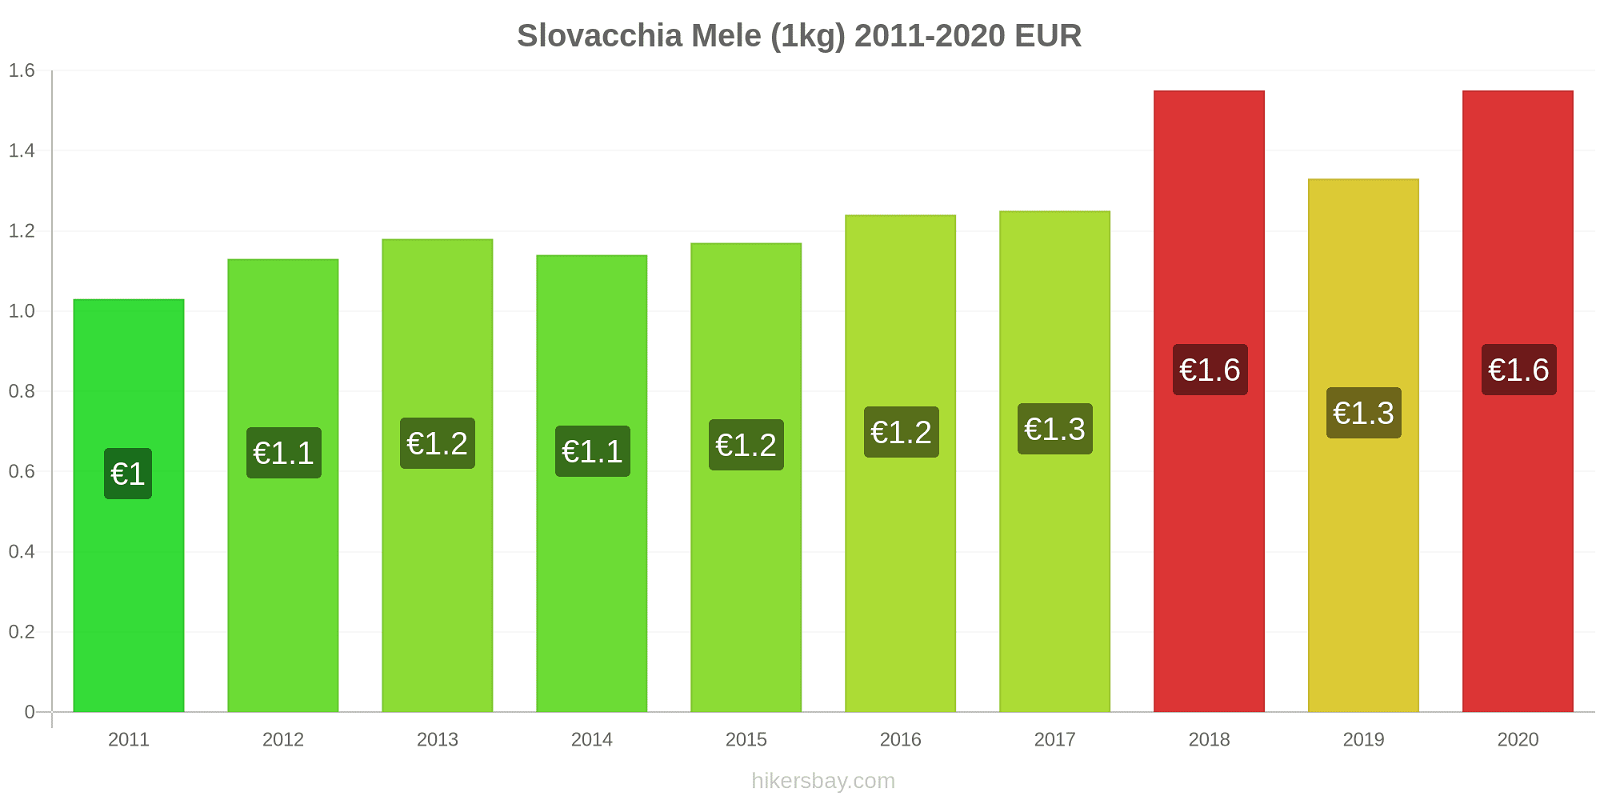 Slovacchia variazioni di prezzo Mele (1kg) hikersbay.com